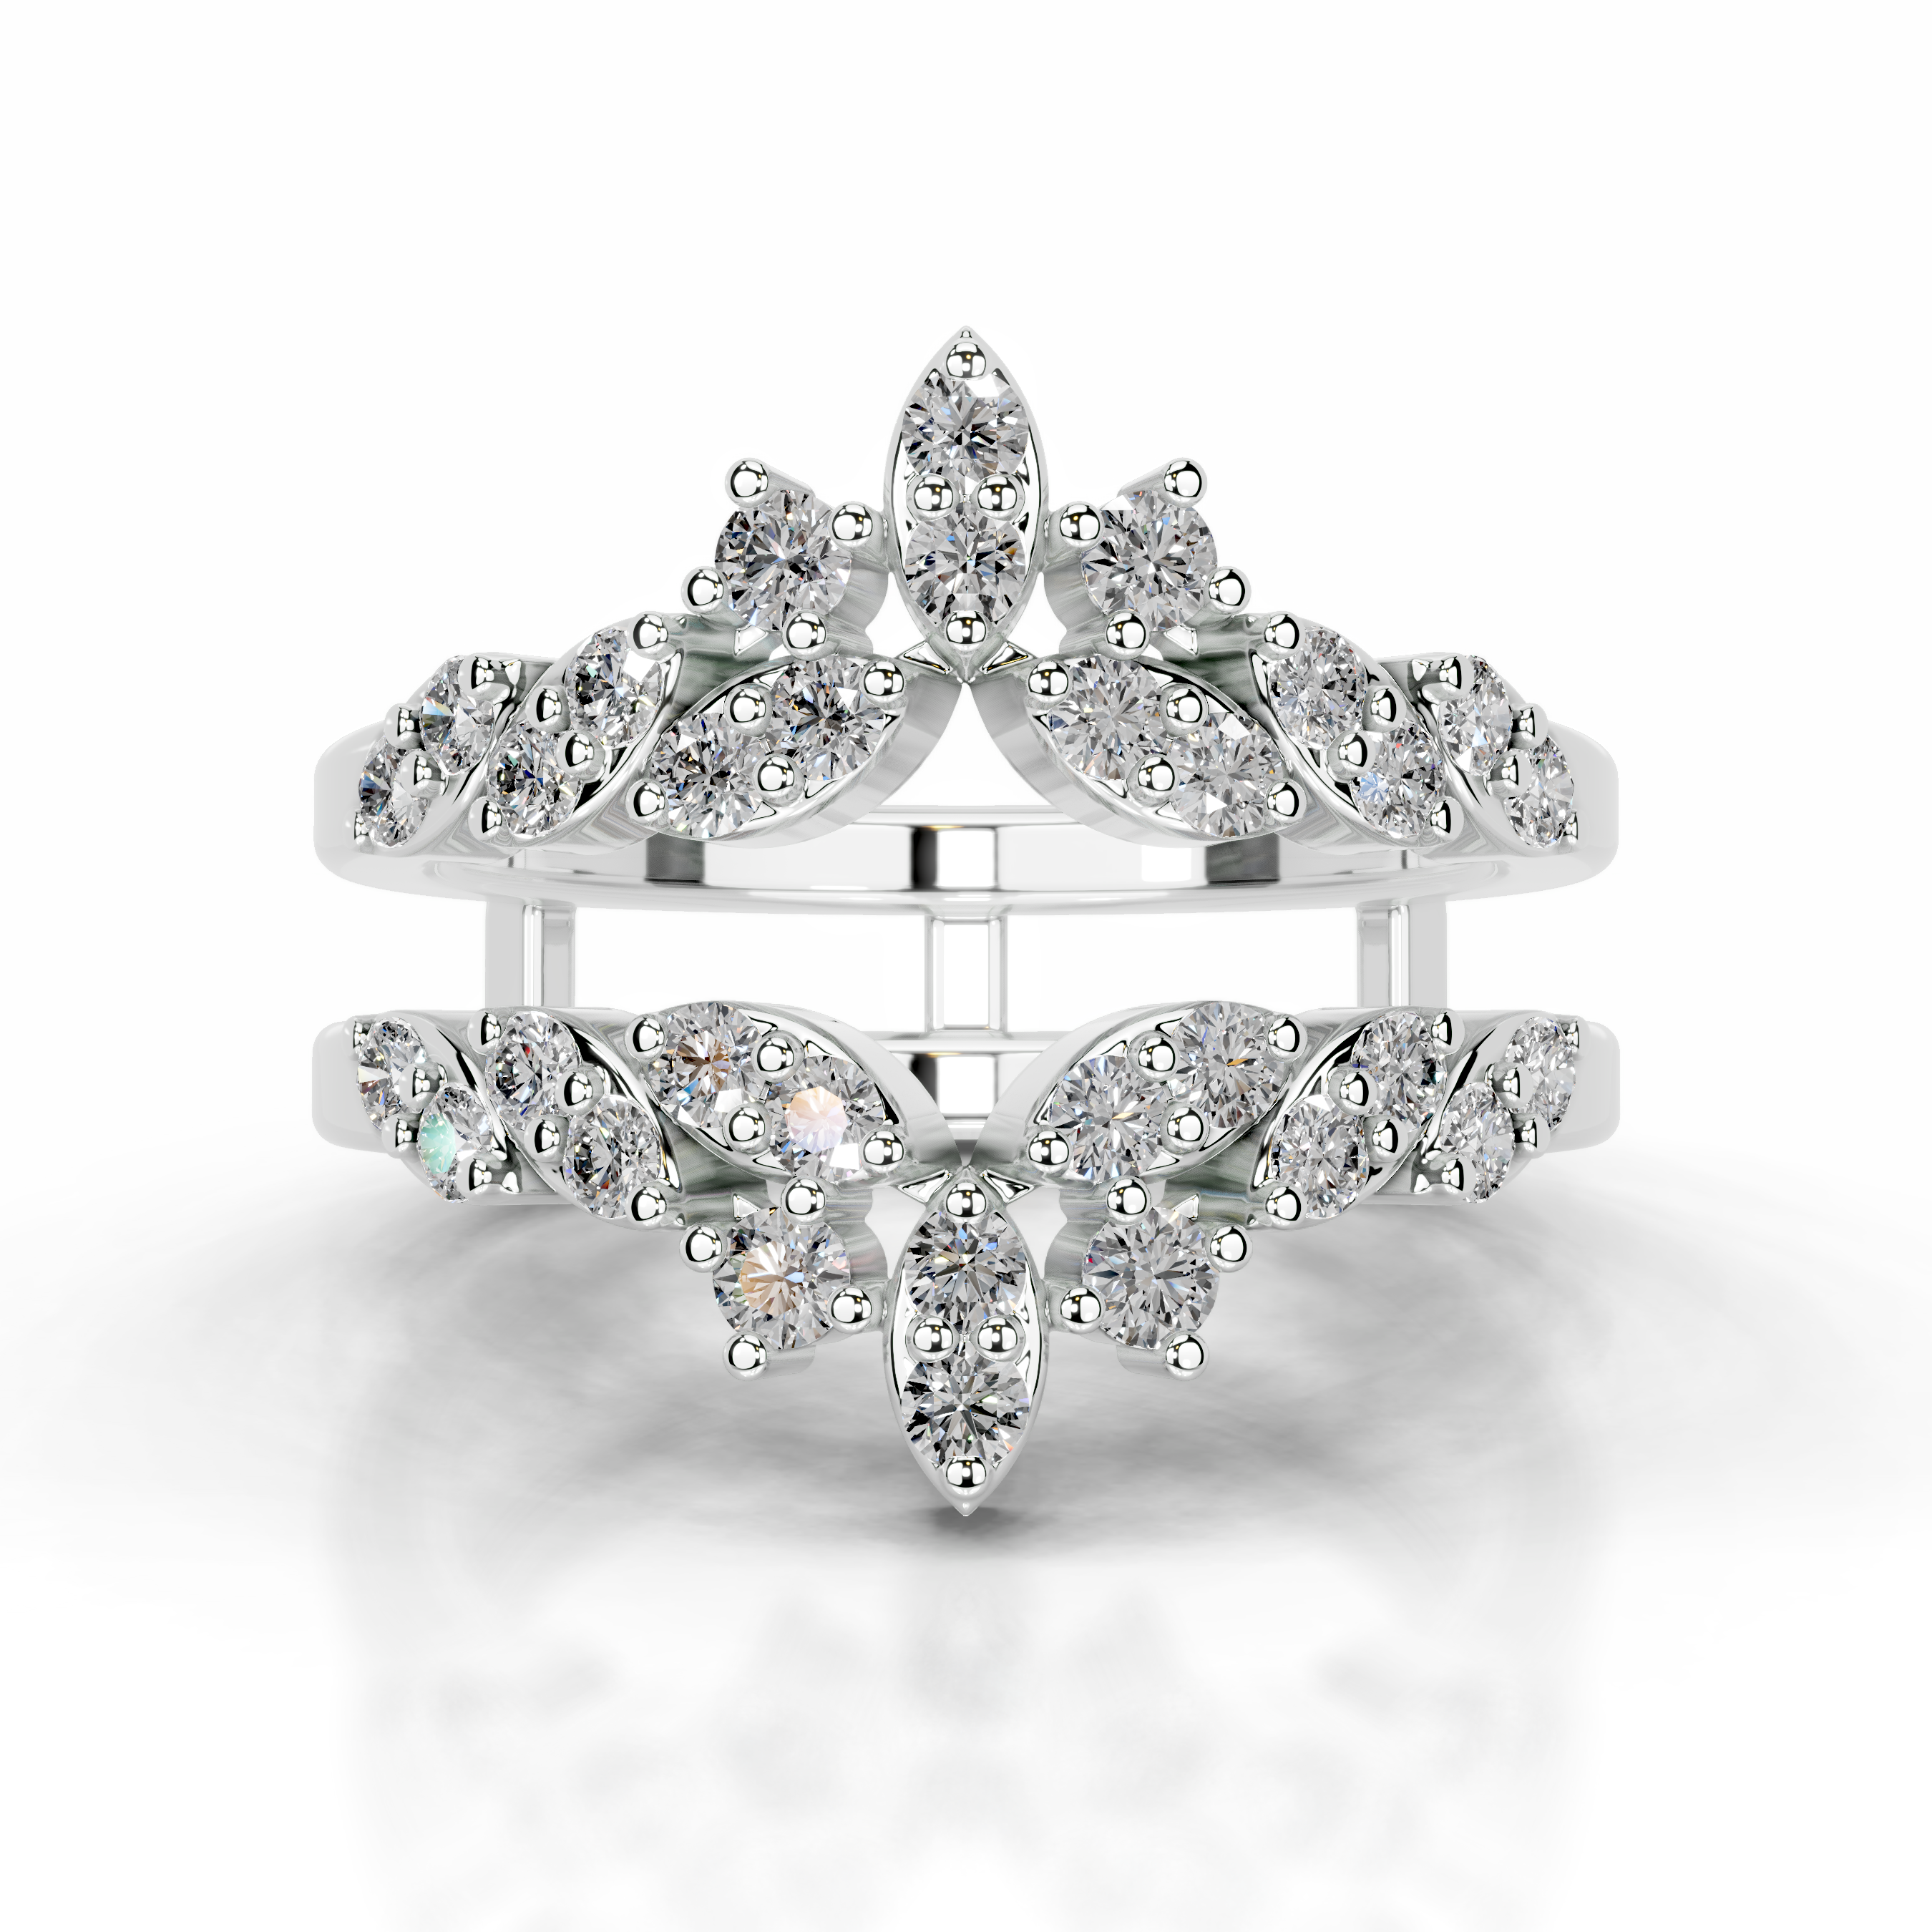 Nikita Diamond Wedding Ring   (0.70 Carat) -14K White Gold